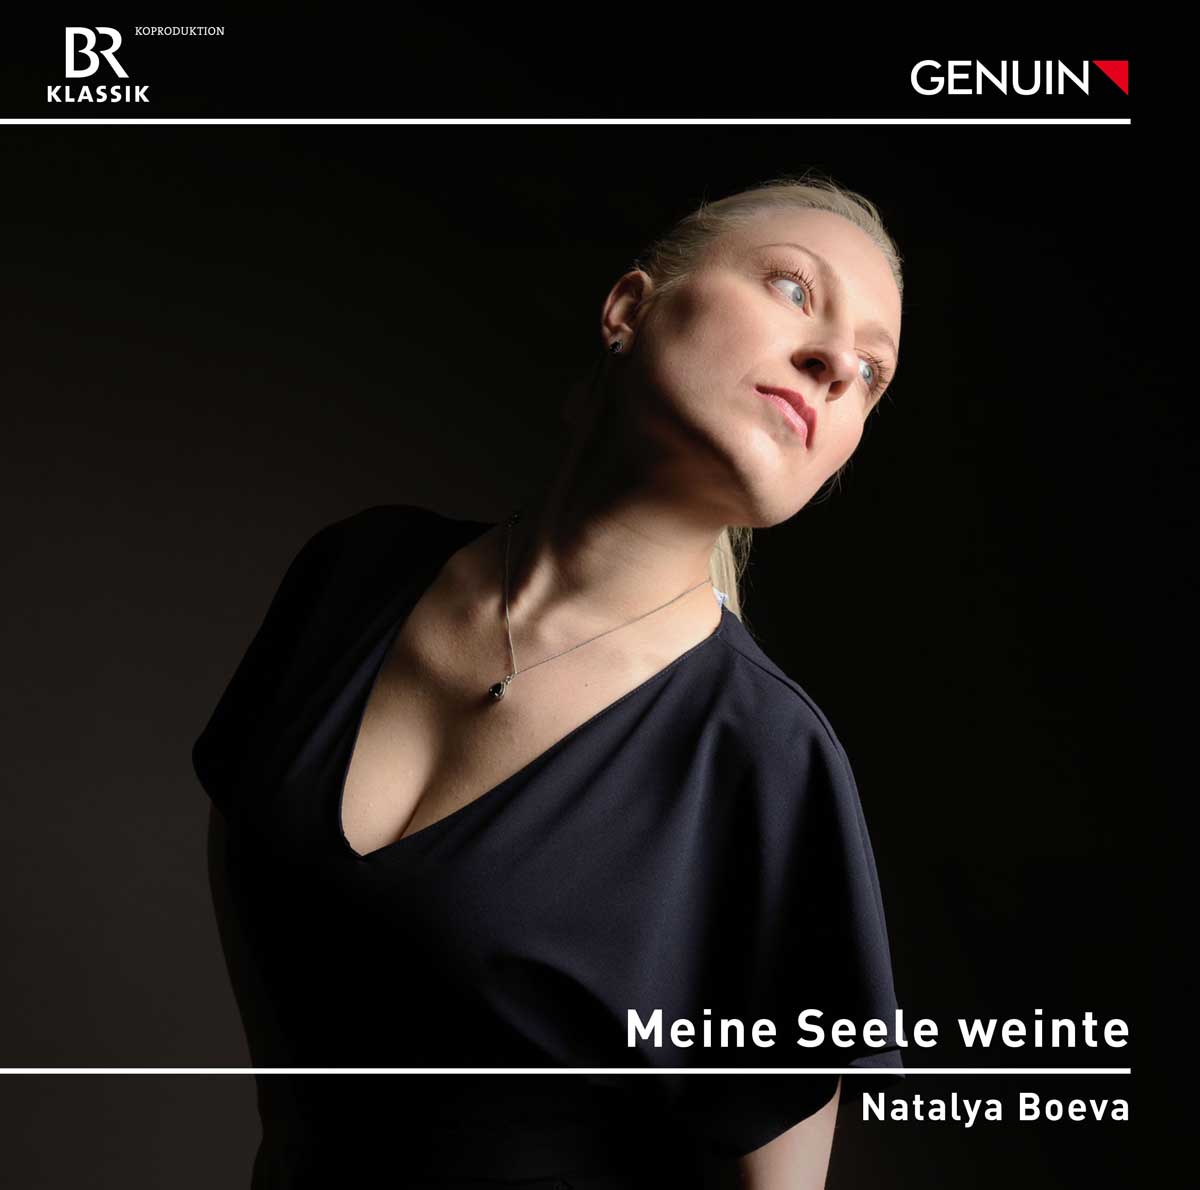 CD album cover 'Meine Seele weinte' (GEN 23817) with Natalya Boeva, Polina Spirina